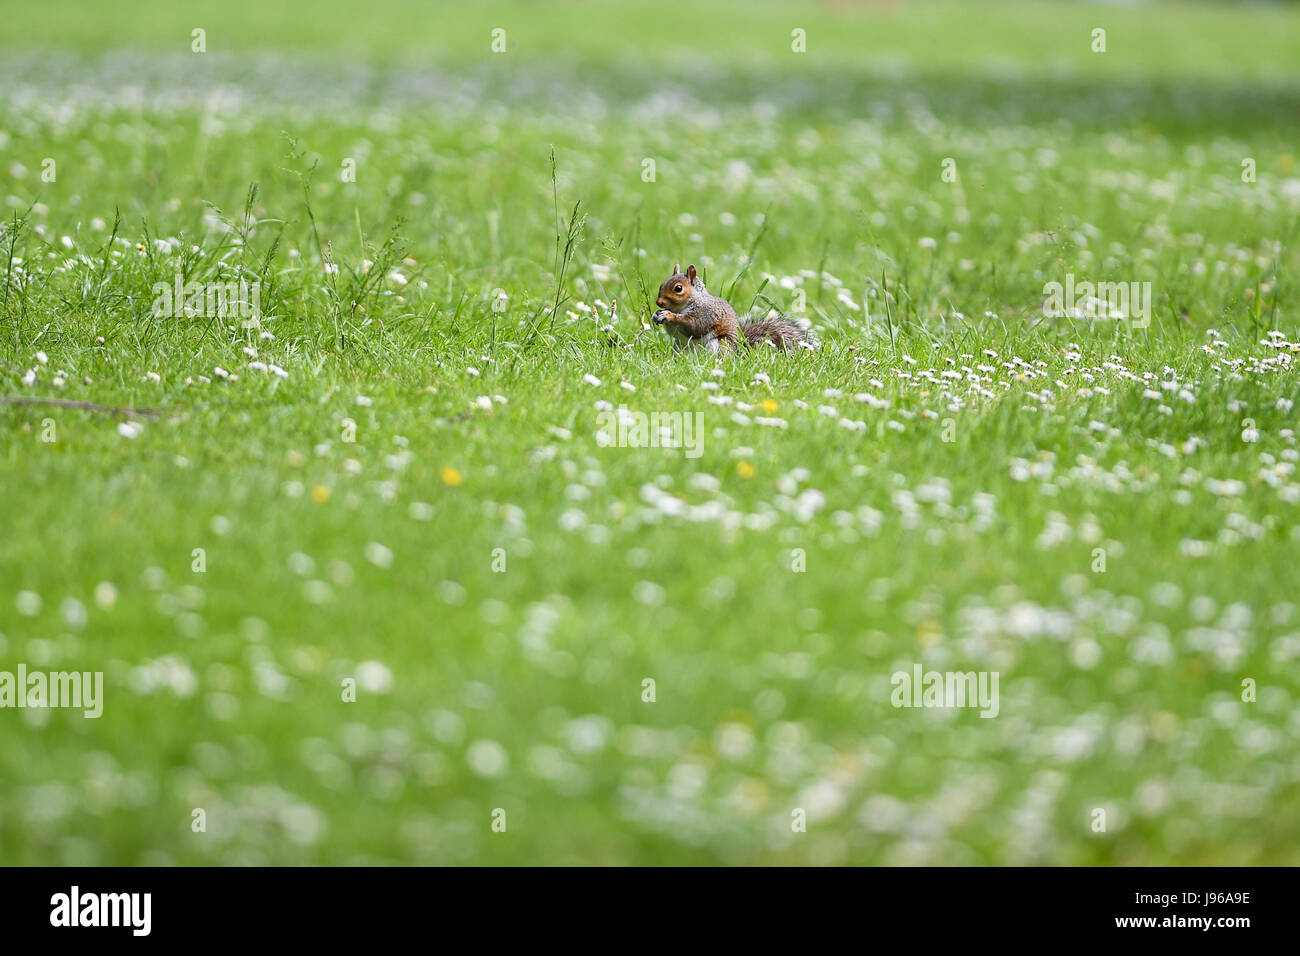 L'écureuil gris Sciurus carolinensis est assis dans l'herbe se nourrir Banque D'Images